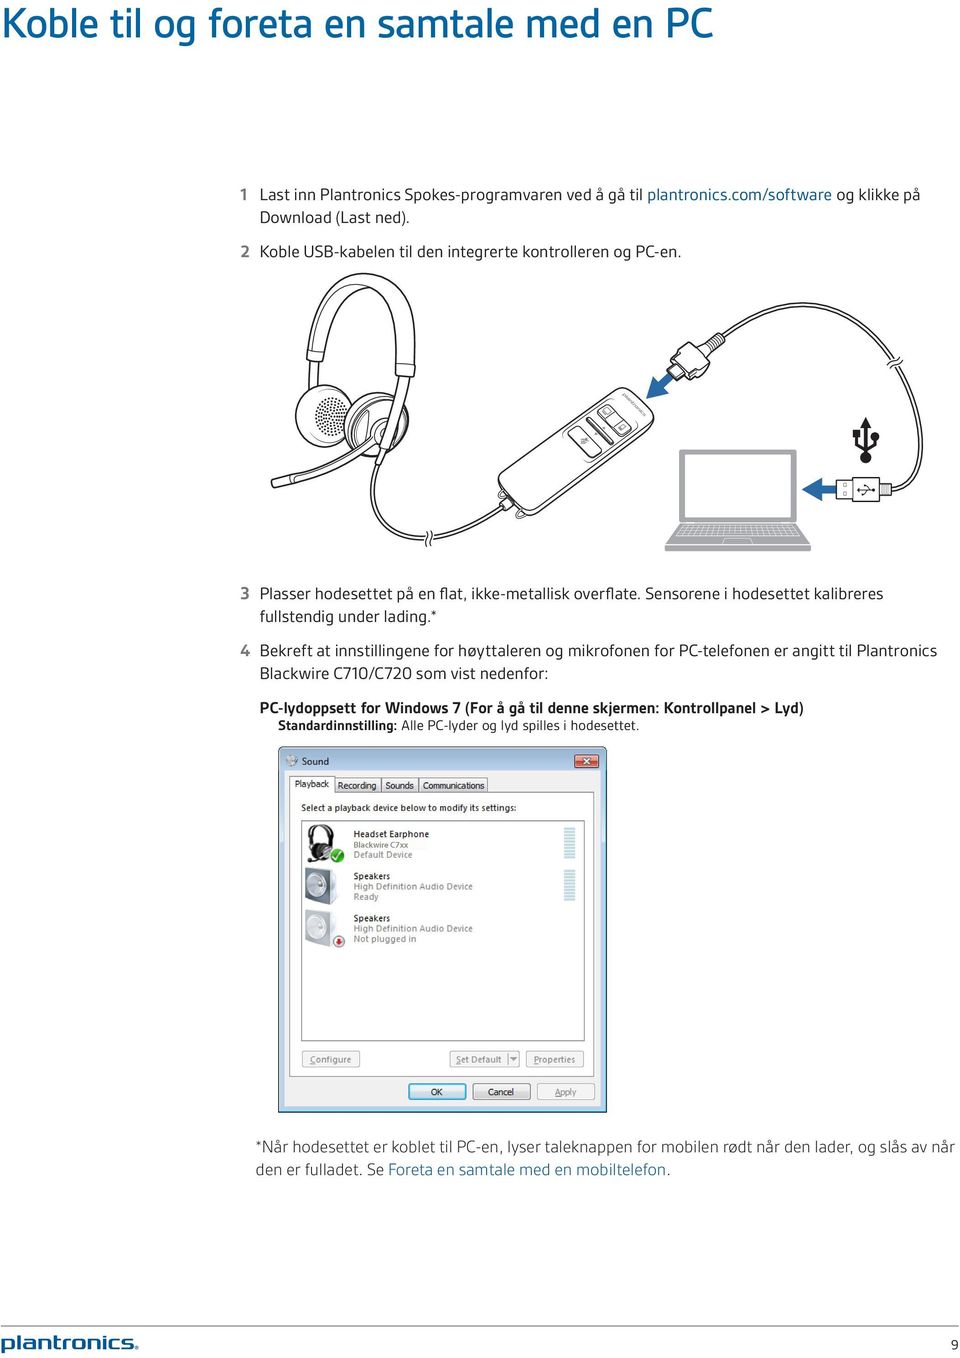 * 4 Bekreft at innstillingene for høyttaleren og mikrofonen for PC-telefonen er angitt til Plantronics Blackwire C710/C720 som vist nedenfor: PC-lydoppsett for Windows 7 (For å gå til denne